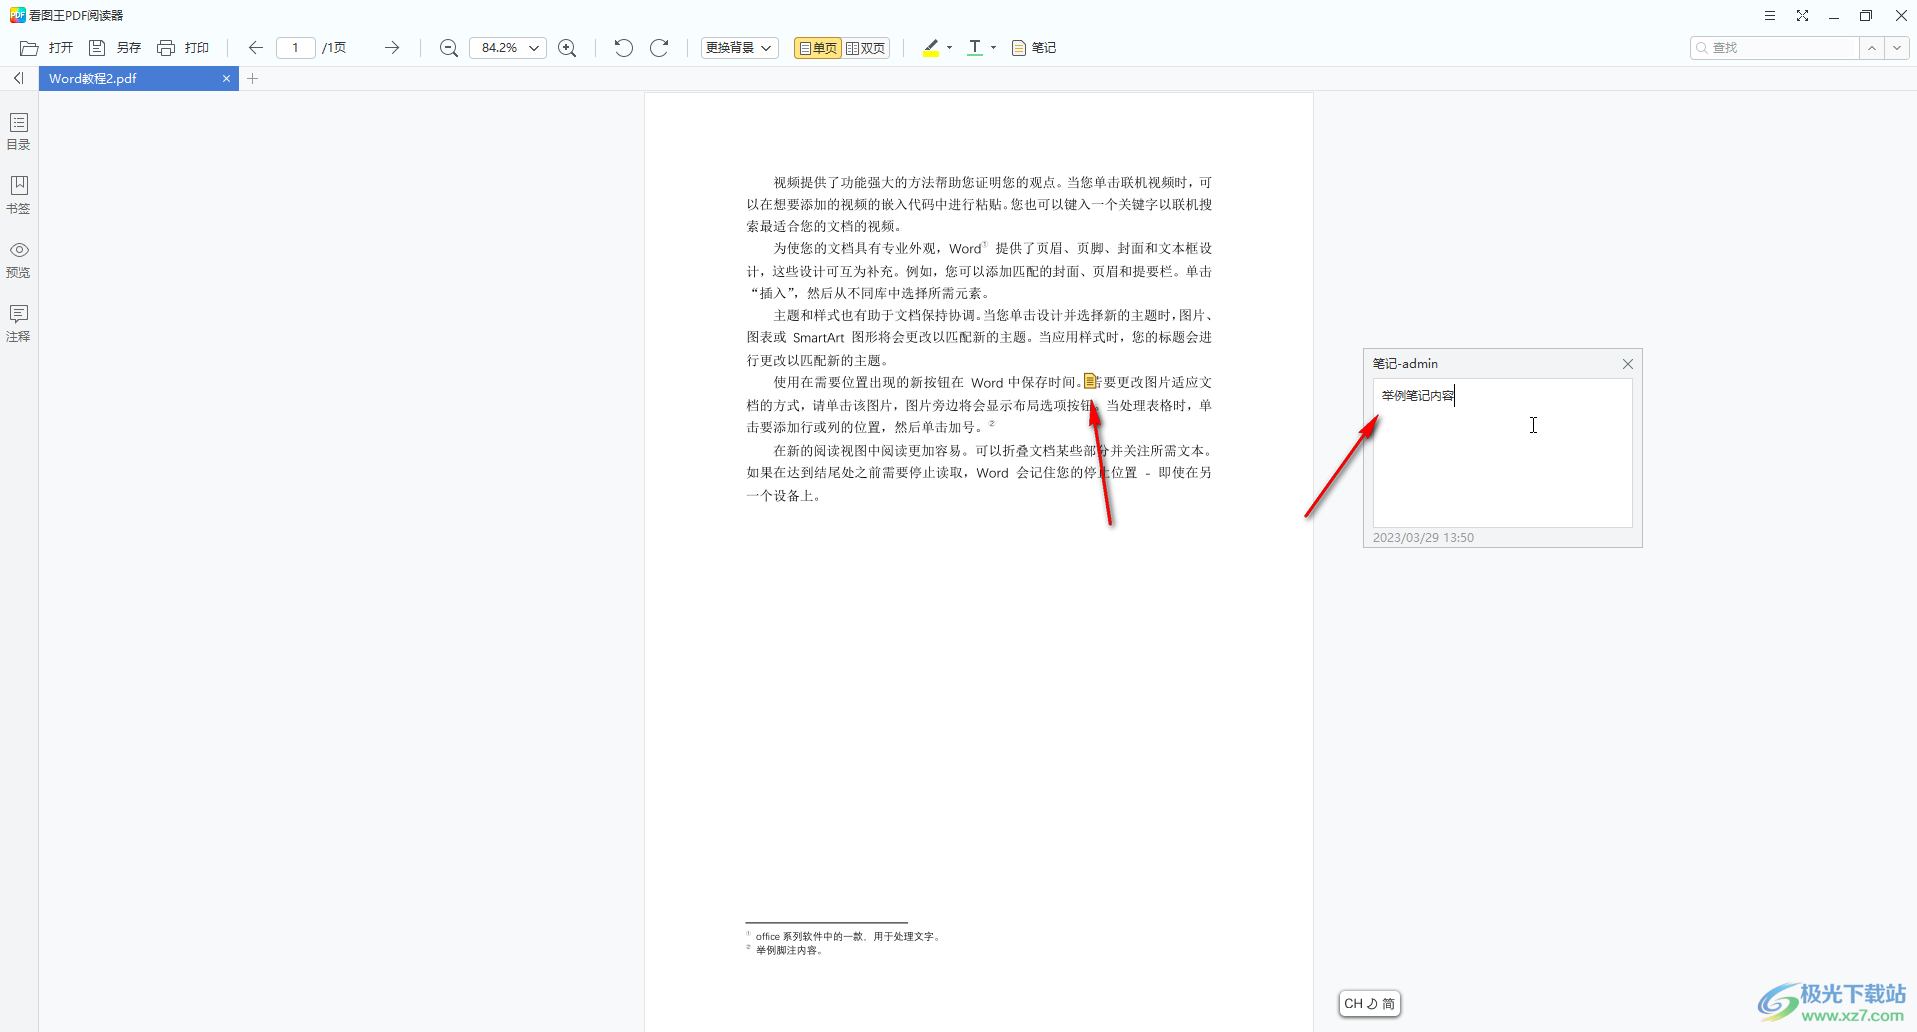 2345看图王在PDF文件中添加注释信息的方法教程